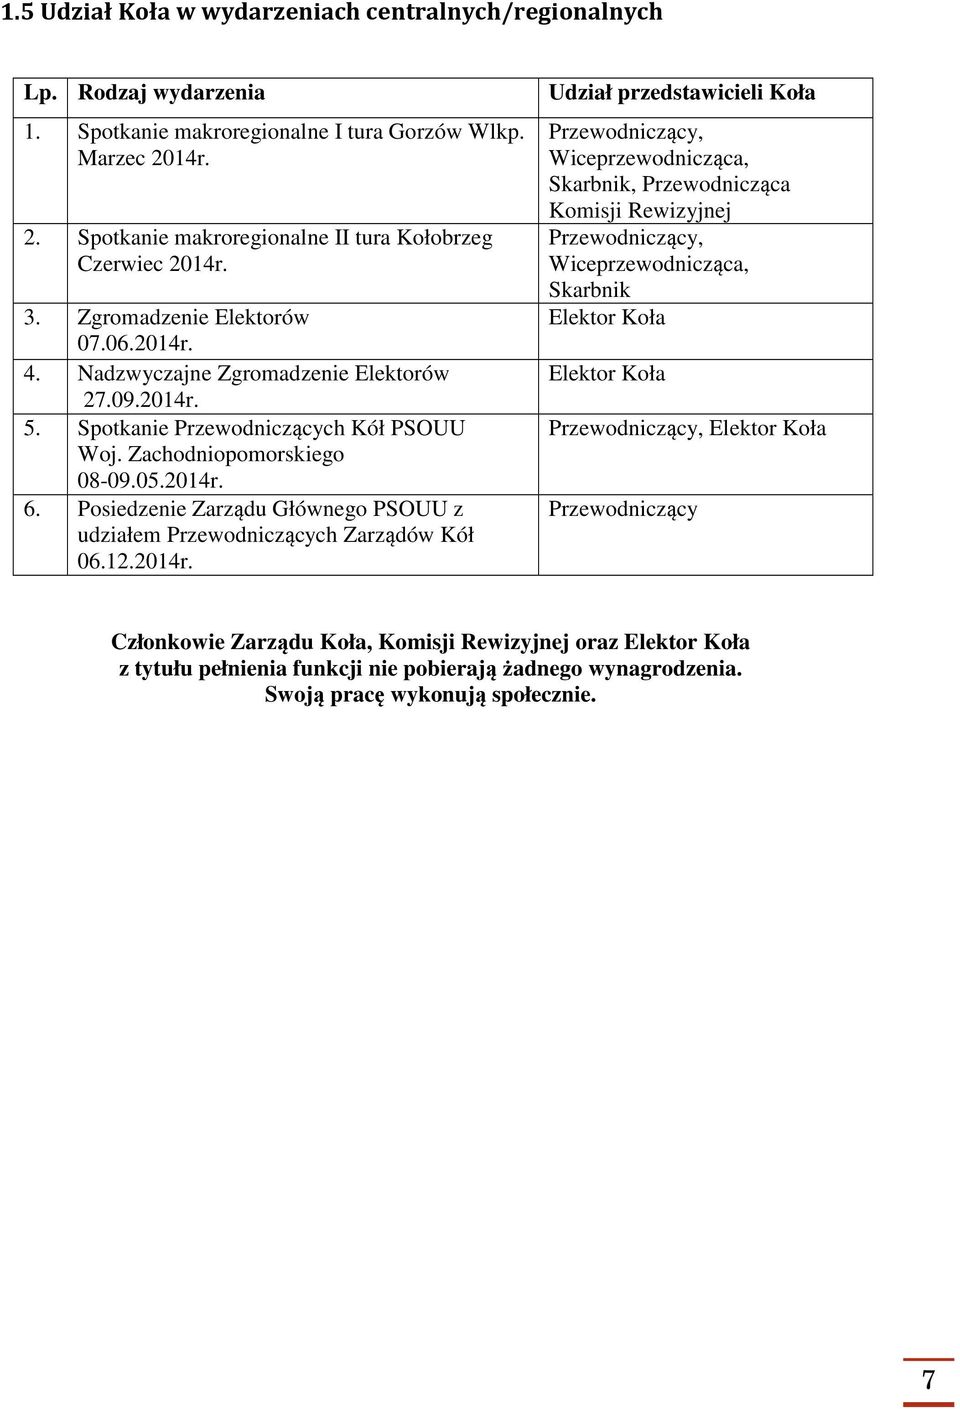 Posiedzenie Zarządu Głównego PSOUU z udziałem Przewodniczących Zarządów Kół 06.12.2014r.